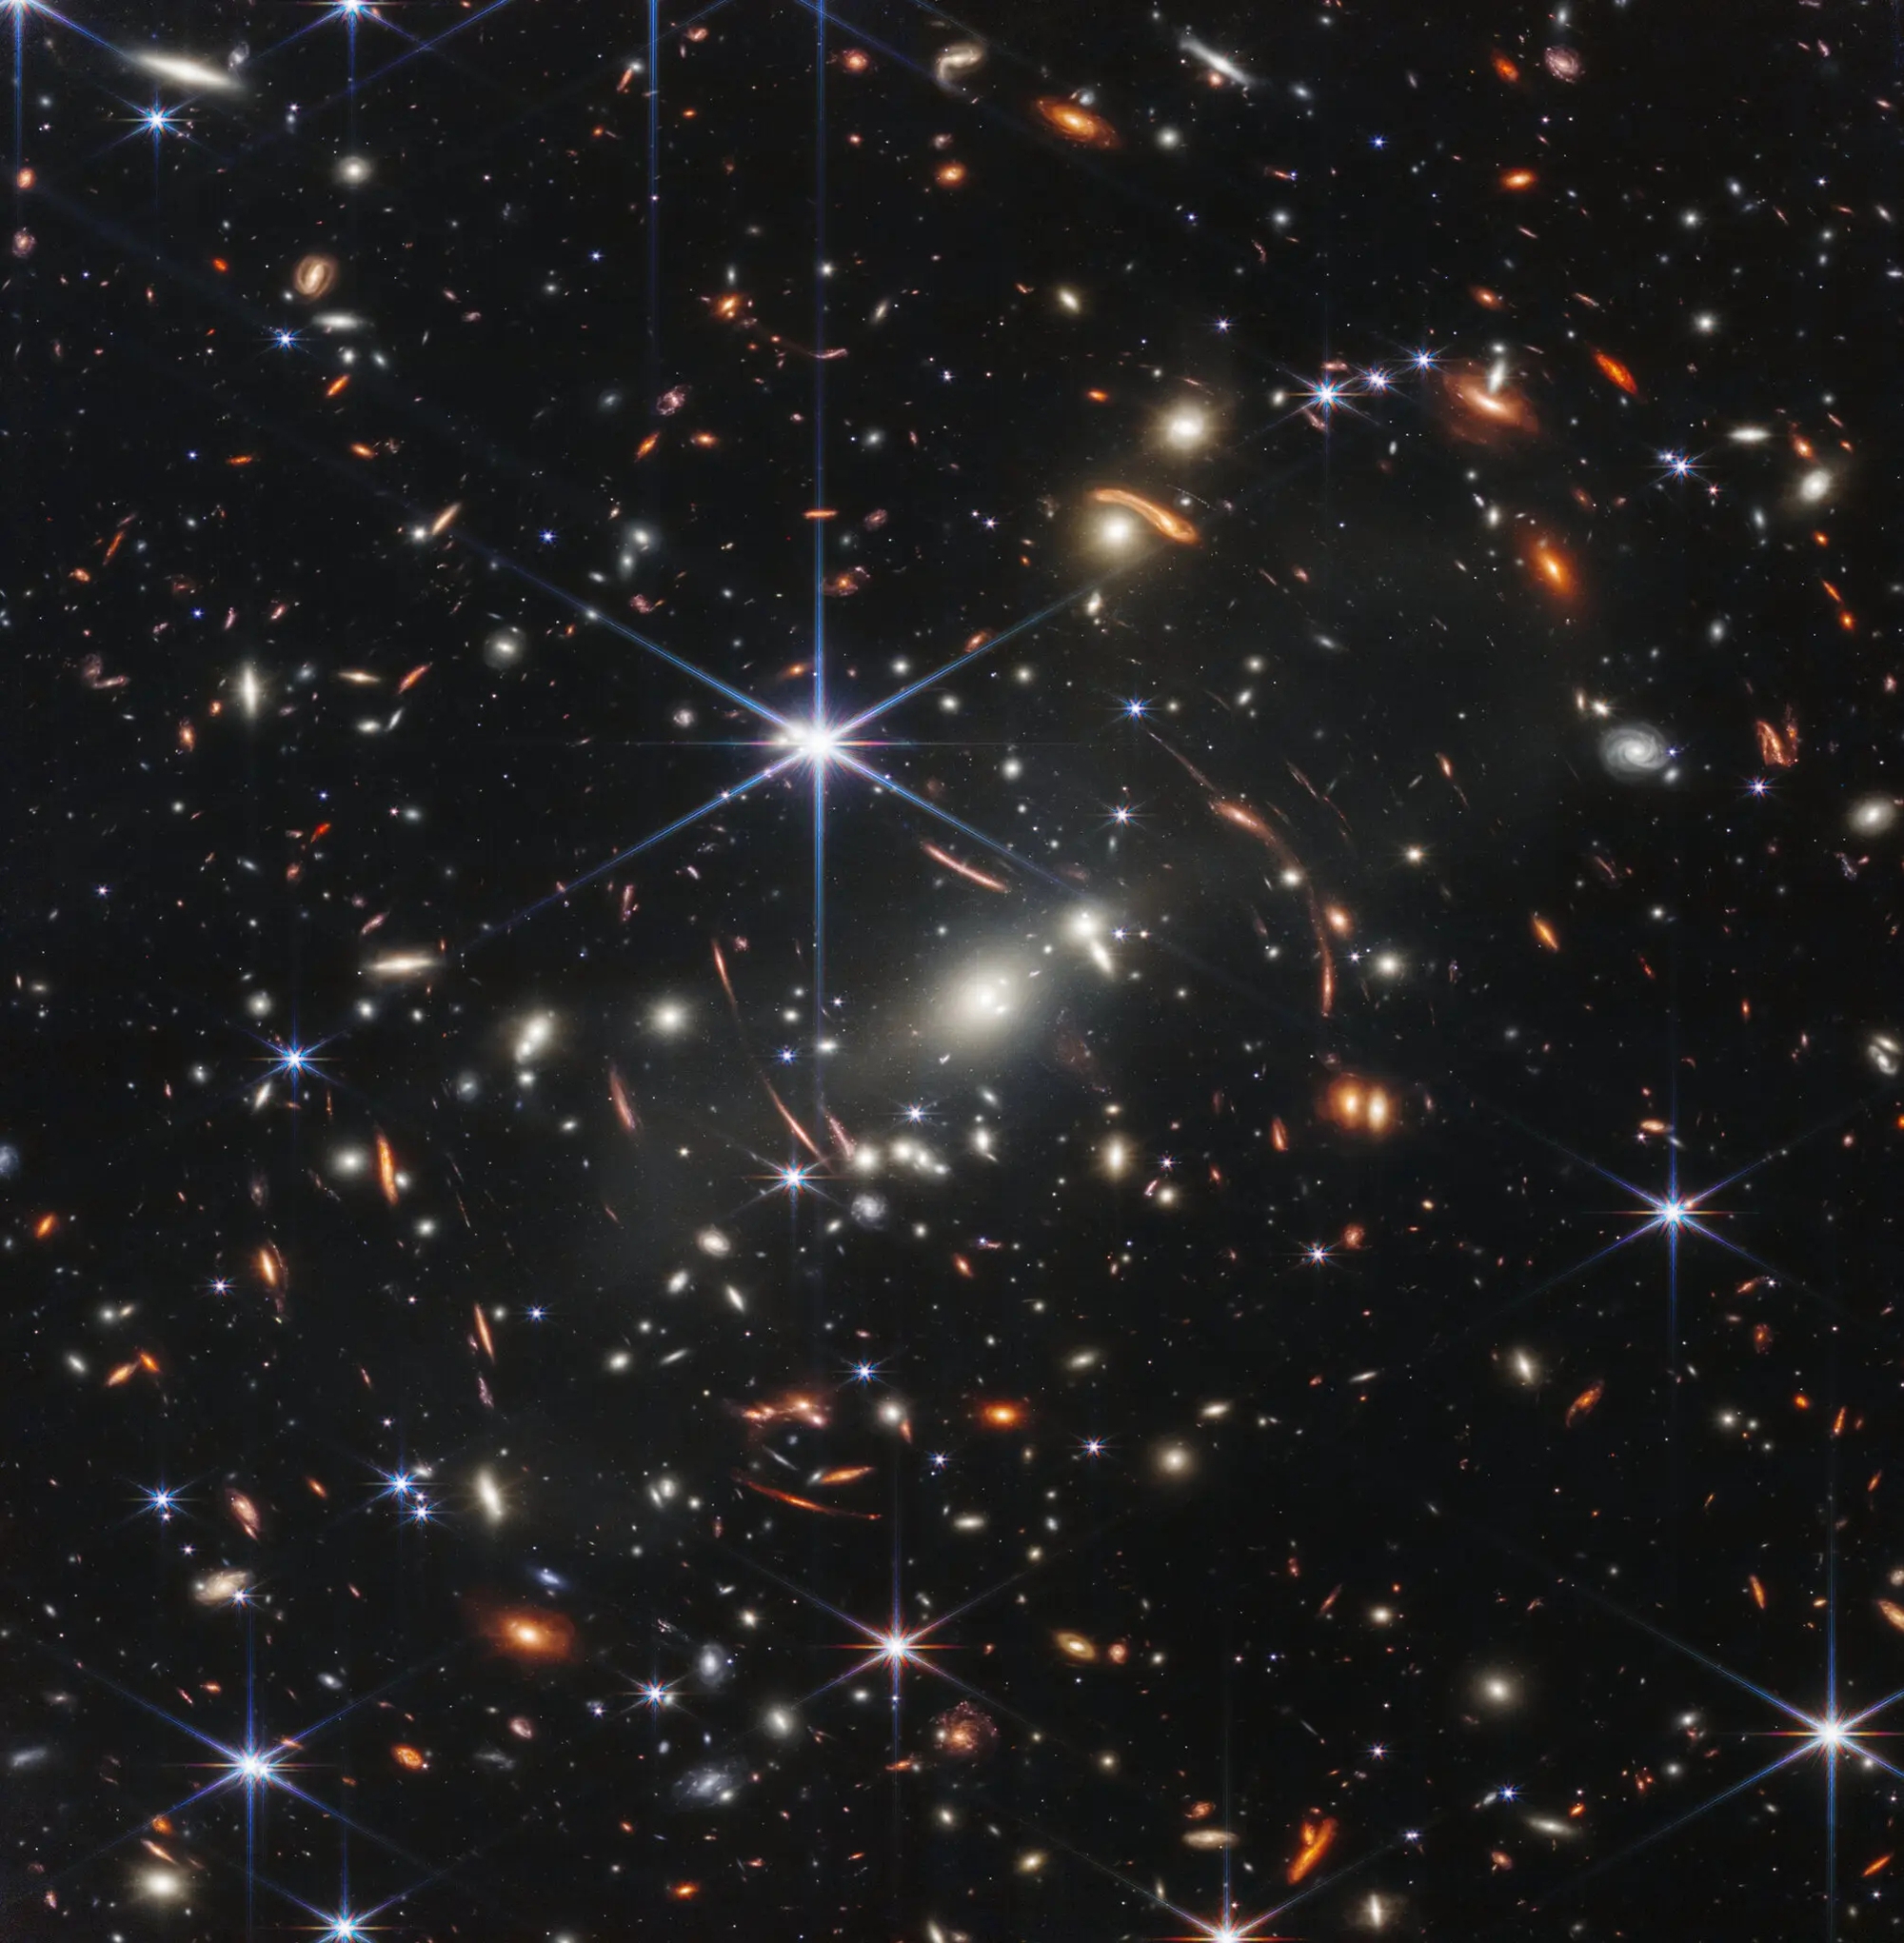 Siêu kính viễn vọng James Webb - Cùng khám phá vũ trụ bí ẩn với siêu kính viễn vọng James Webb! Đây là công cụ quan trọng của NASA trong việc nghiên cứu các chất liệu, các hành tinh và các ngôi sao ở xa. Hãy xem qua hình ảnh để cảm nhận được sự tuyệt vời của công nghệ khoa học hiện đại này!